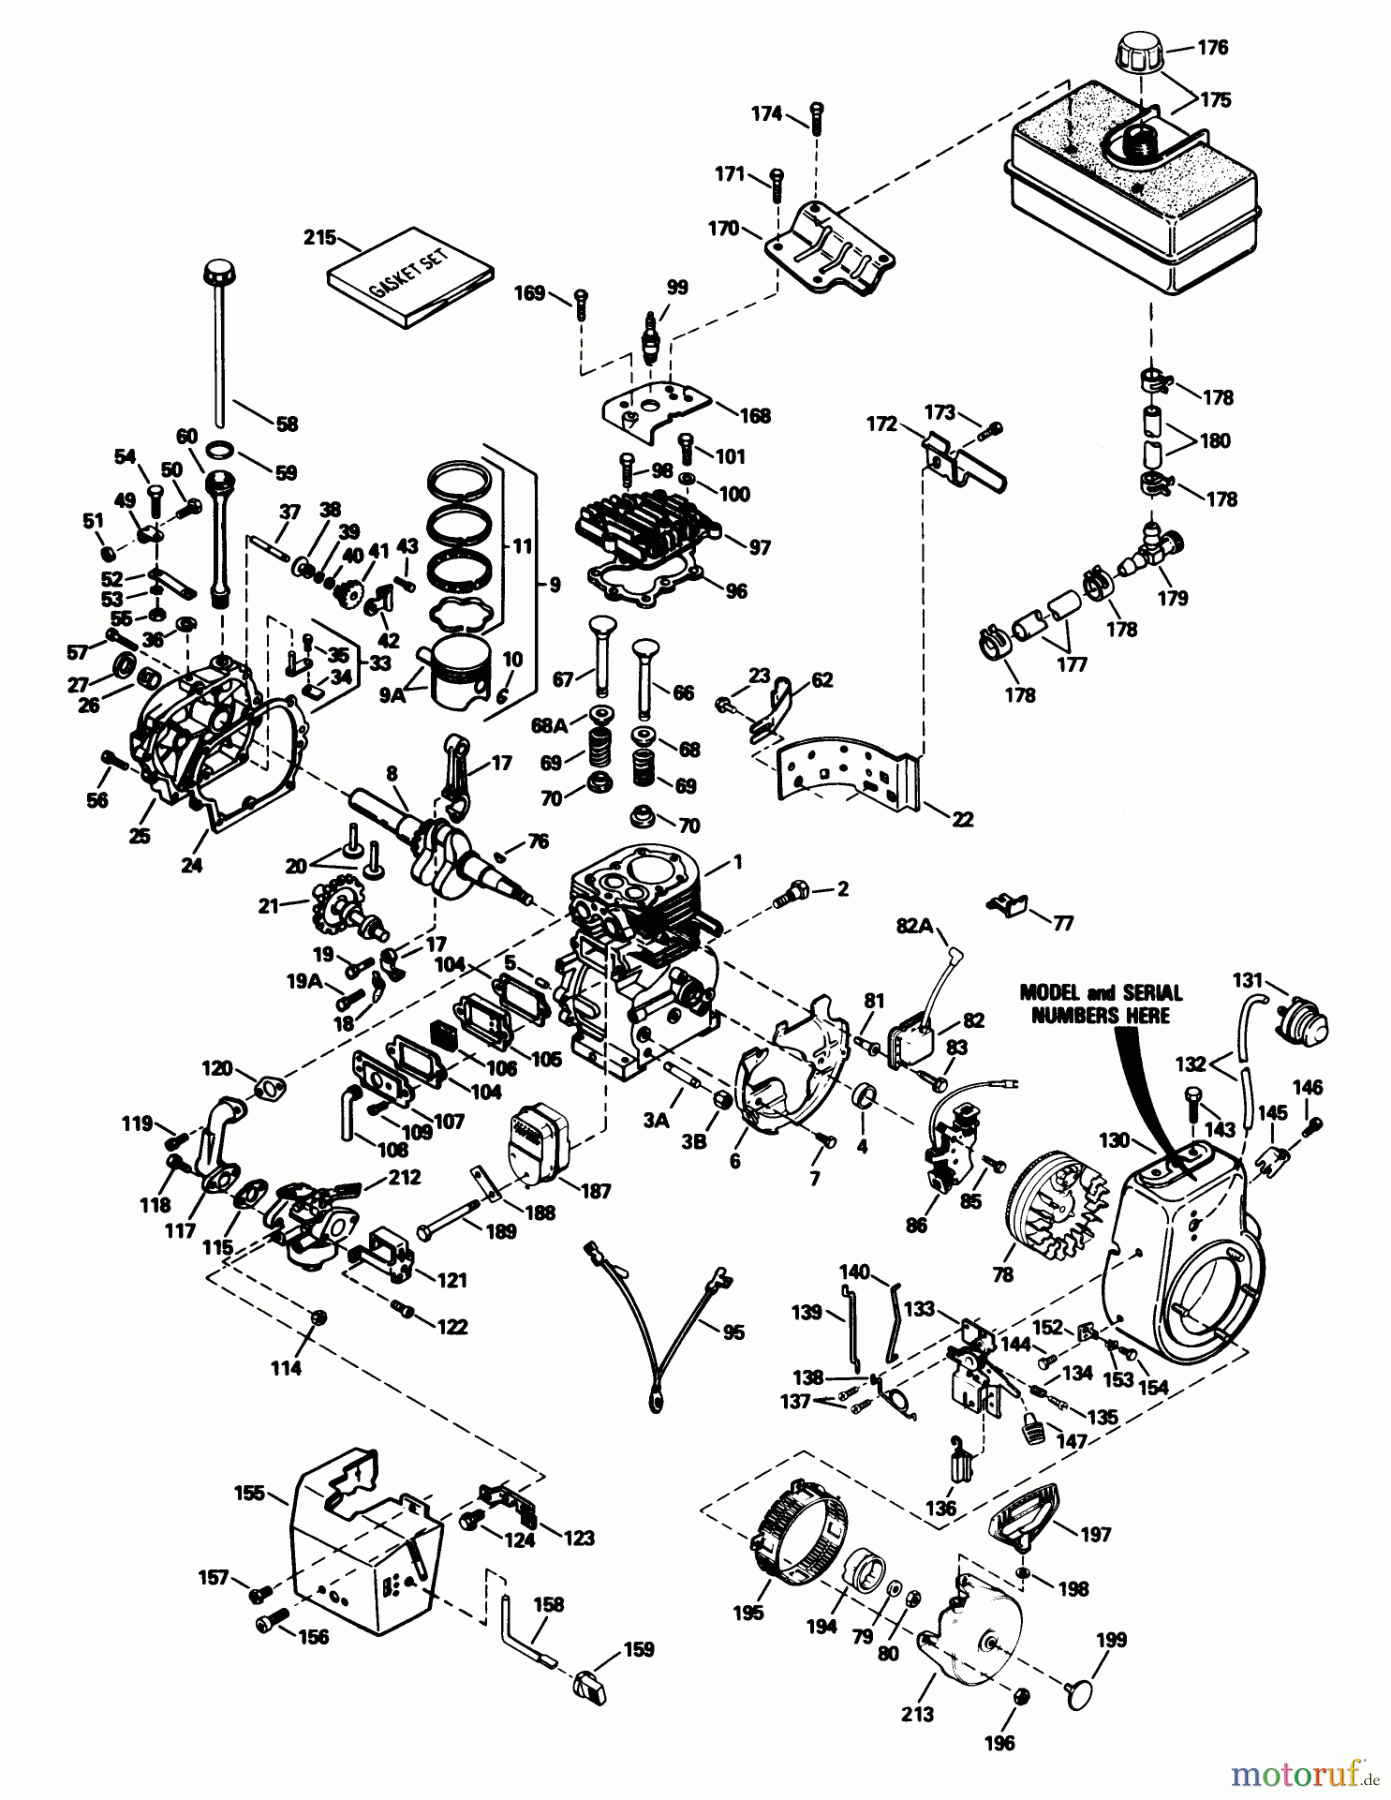  Toro Neu Snow Blowers/Snow Throwers Seite 1 38574 (828) - Toro 828 Power Shift Snowthrower, 1991 (1000001-1999999) ENGINE TECUMSEH MODEL NO. HM80-155386P